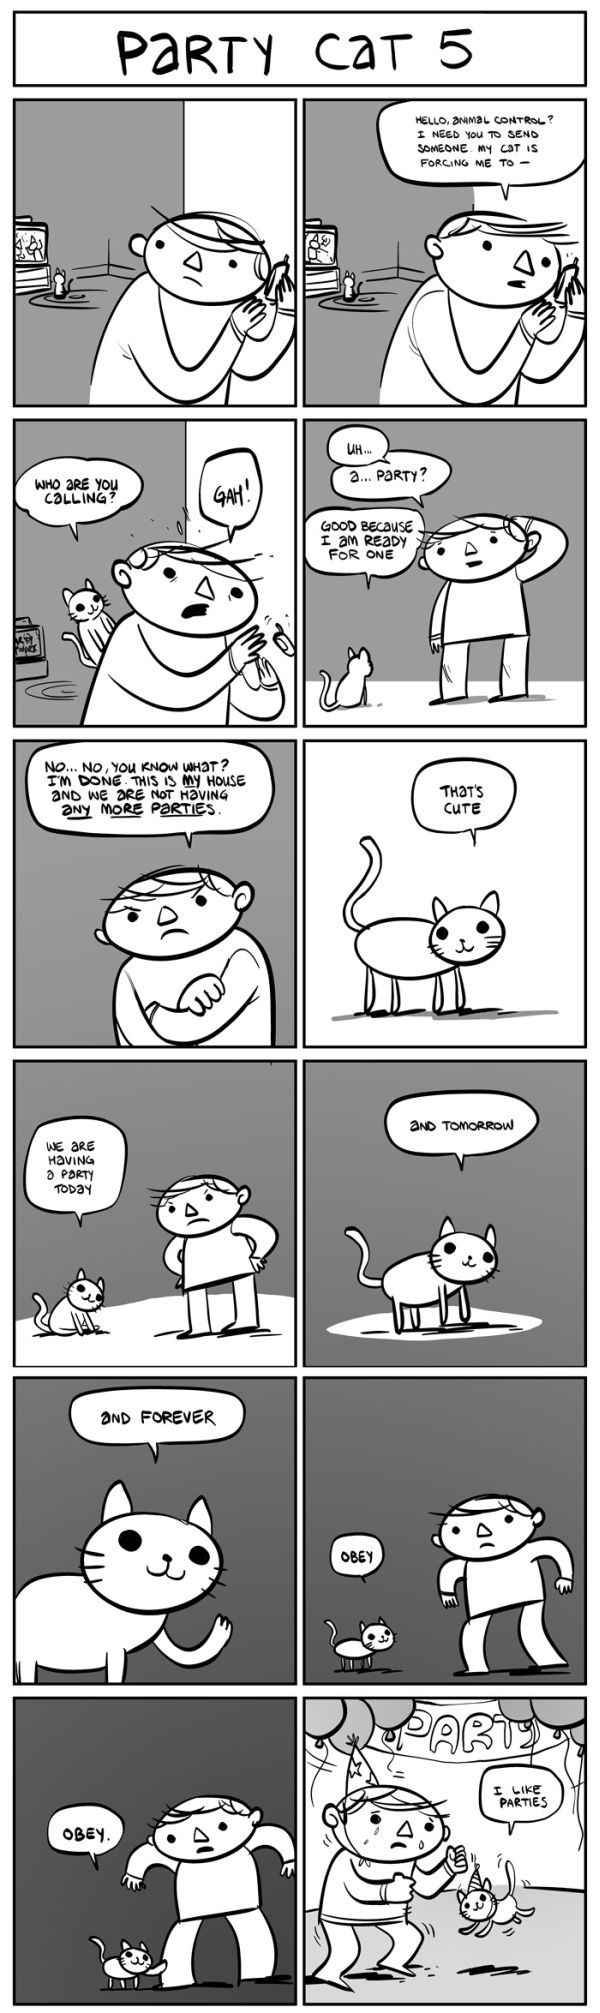 Party Cat Comics (6 pics)